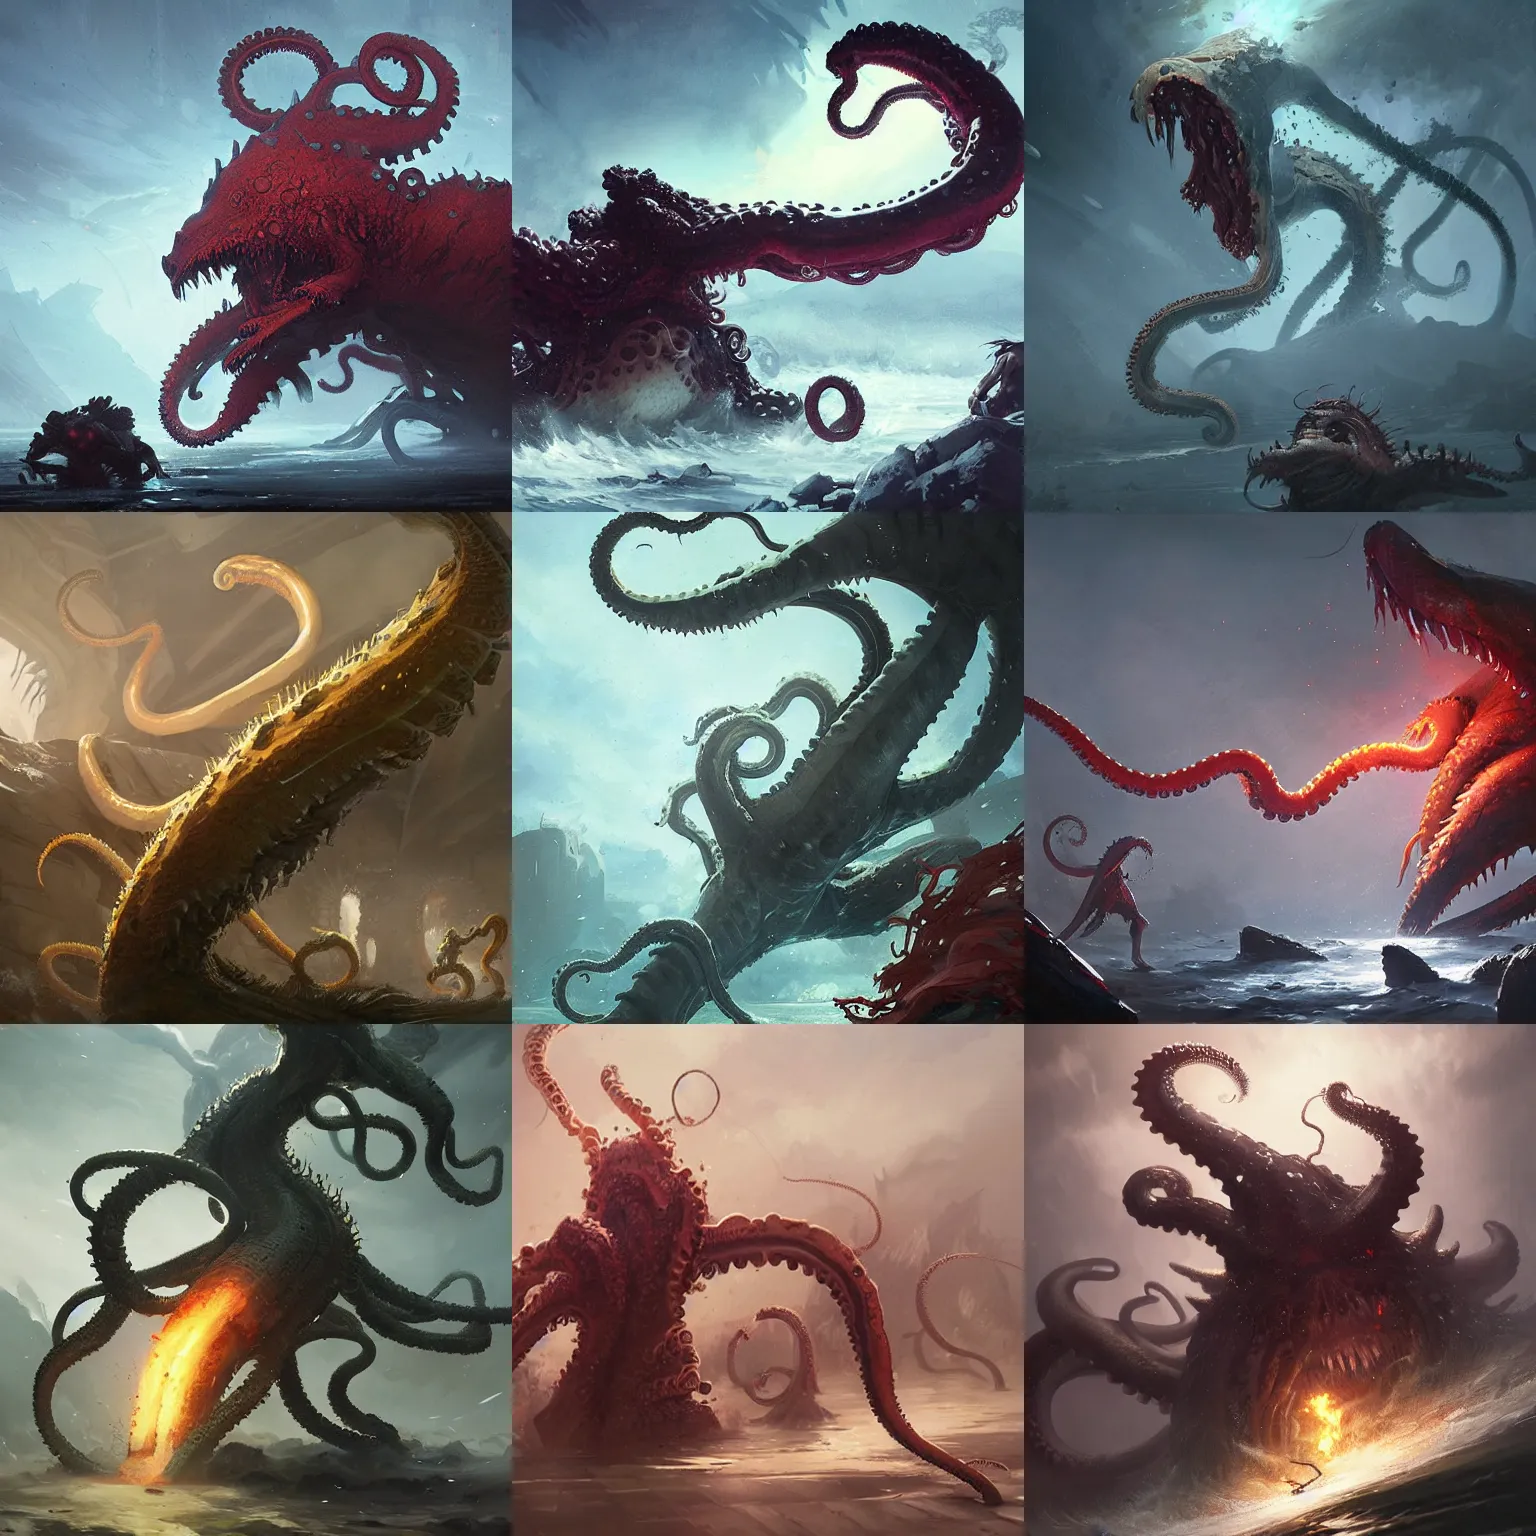 Prompt: tentacle monster in battle by greg rutkowski